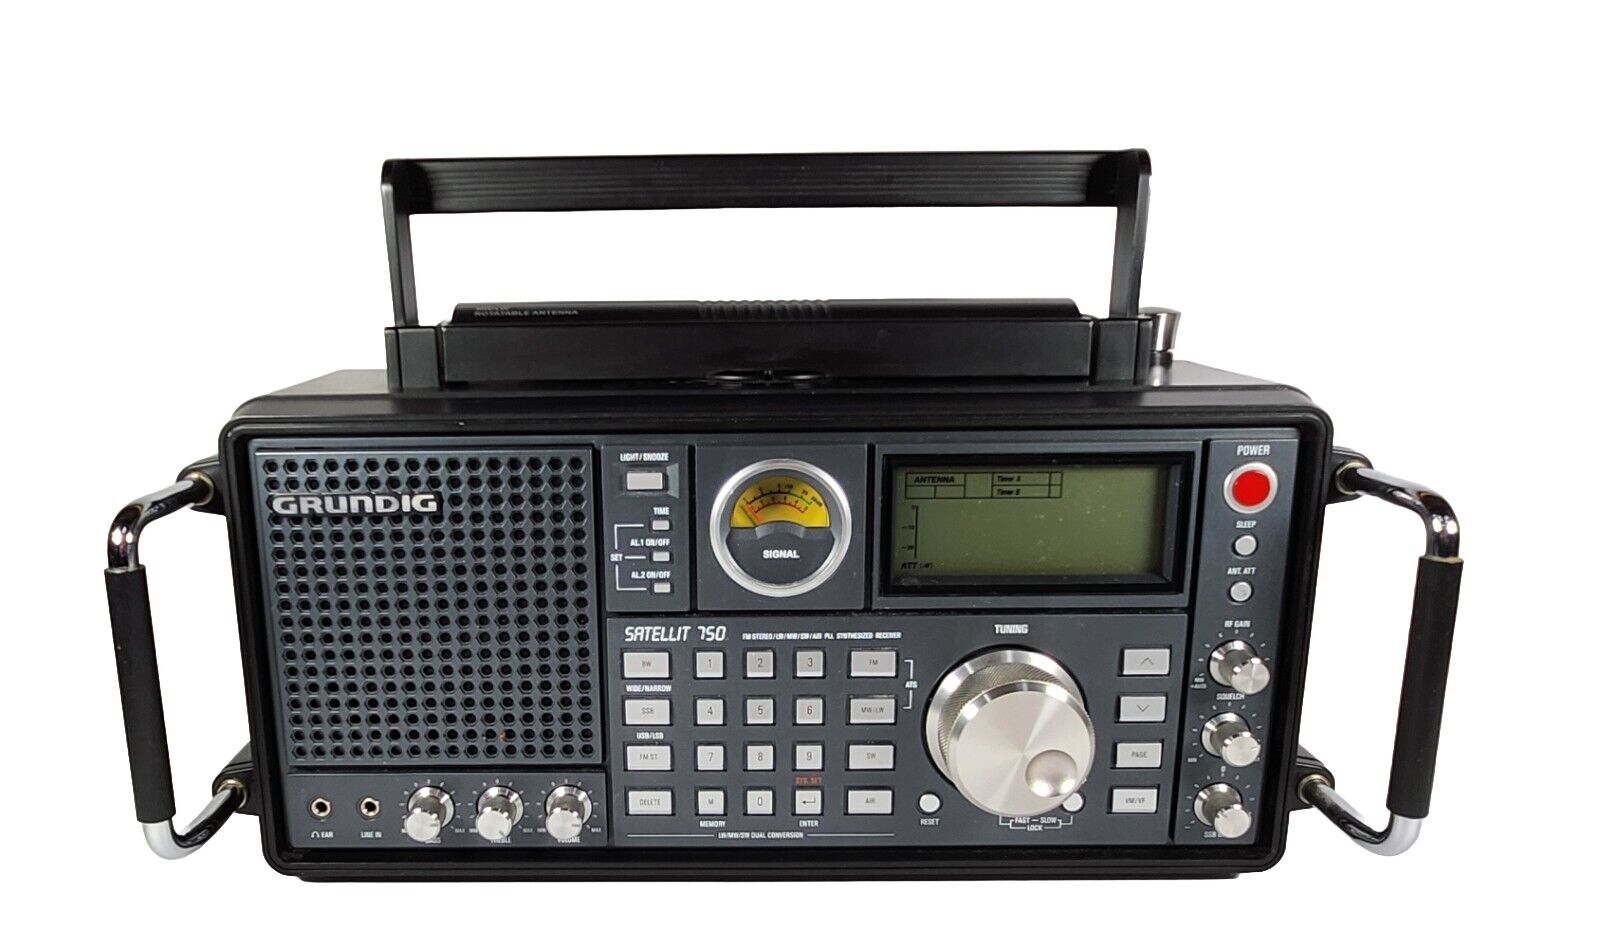 GRUNDIG ETON SATELLIT 750 FM Stereo/LW/MW/SW•SSB/Air Band PLL Receiver